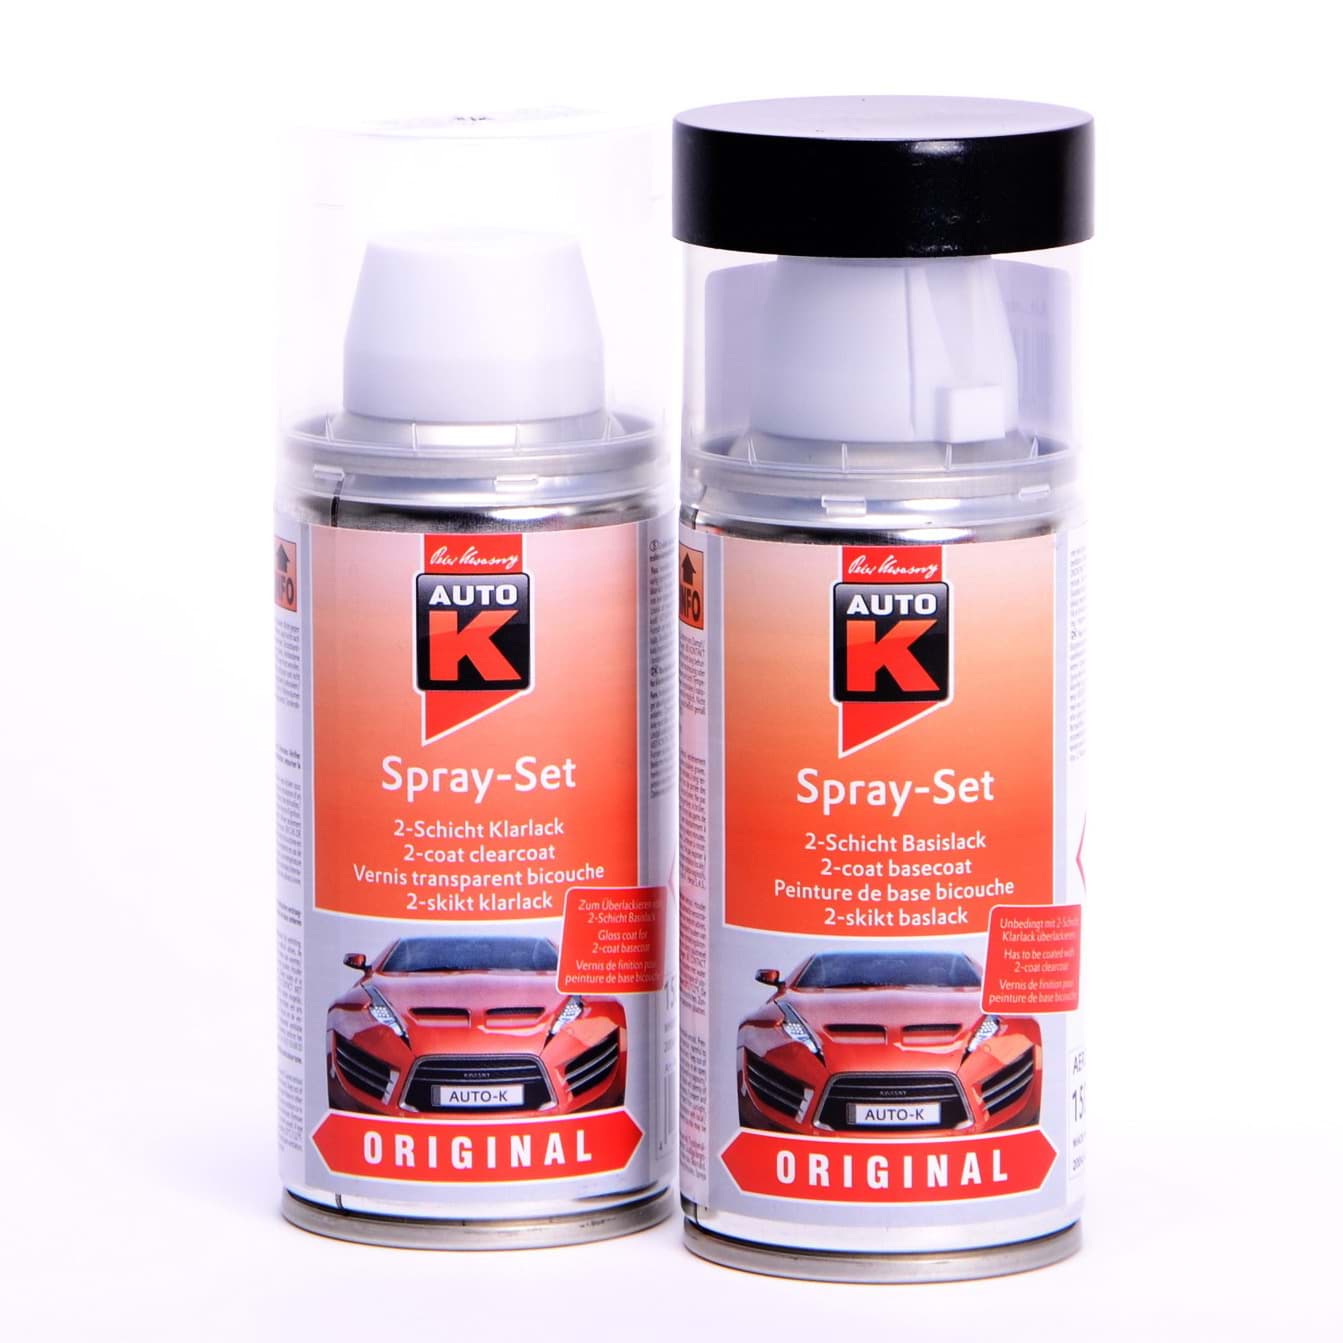 Auto-K Spray-Set Autolack für Volkswagen, VW, Audi LZ9W